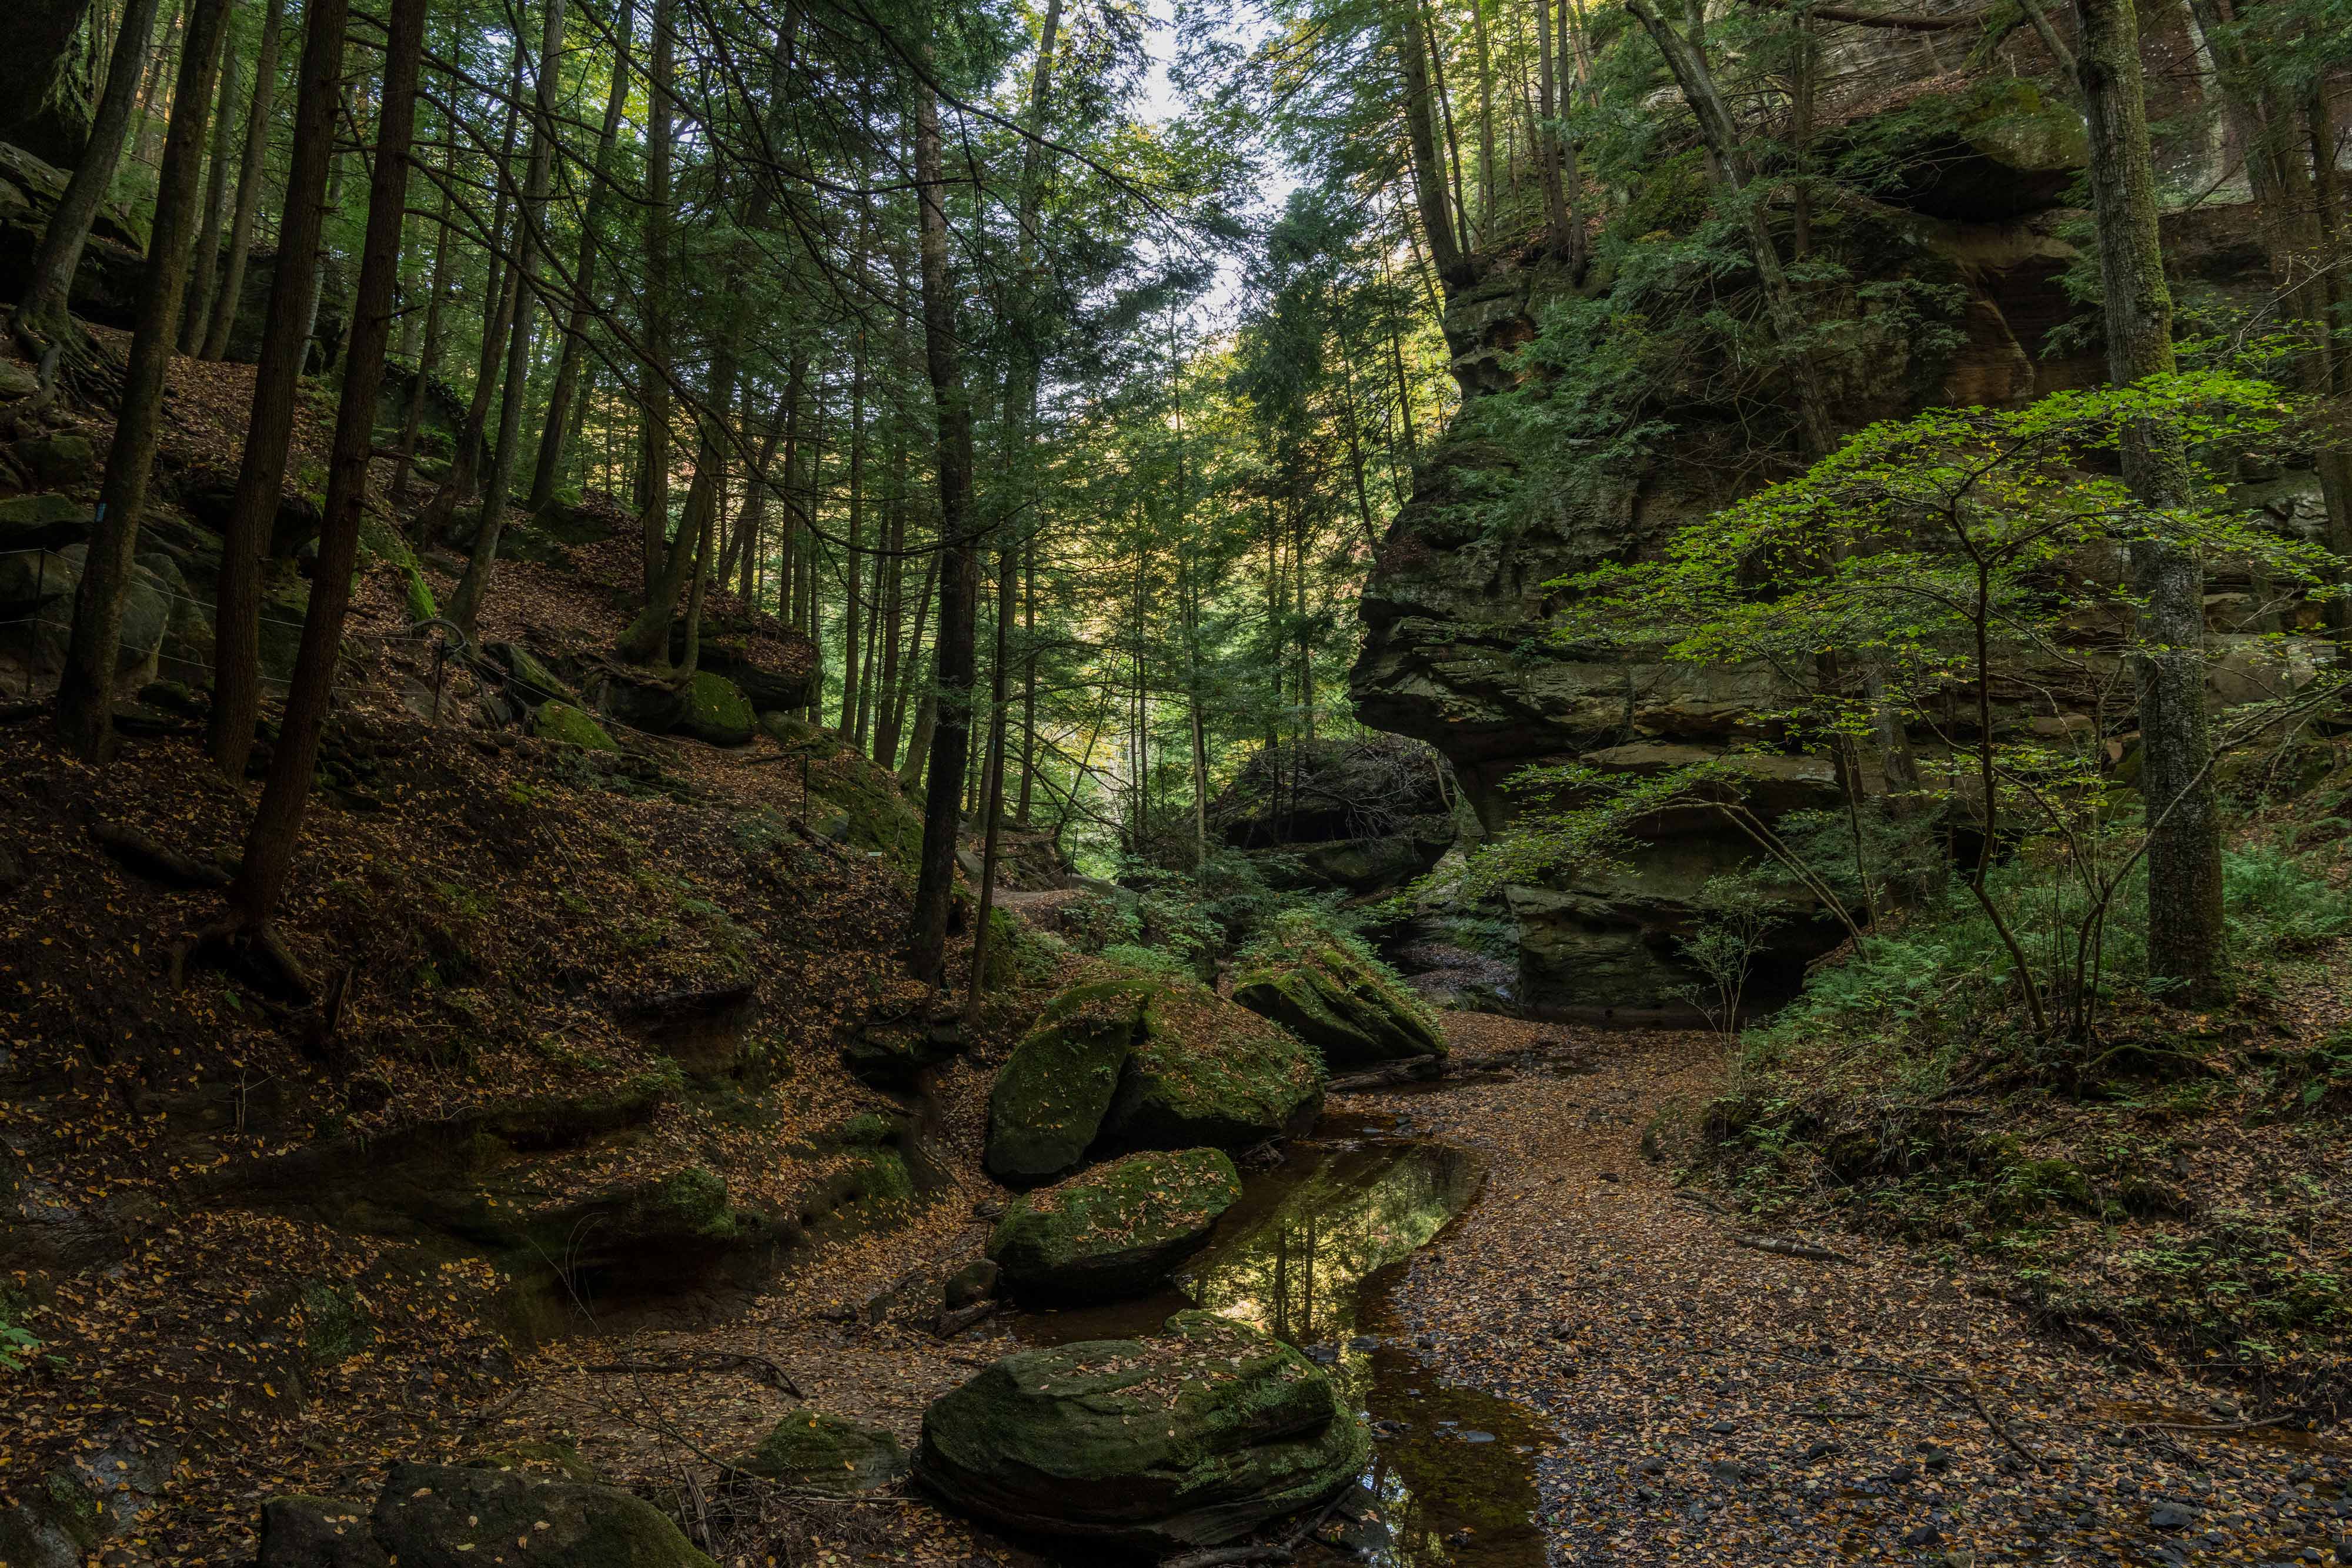 A thin stream runs through a dark forestbed.